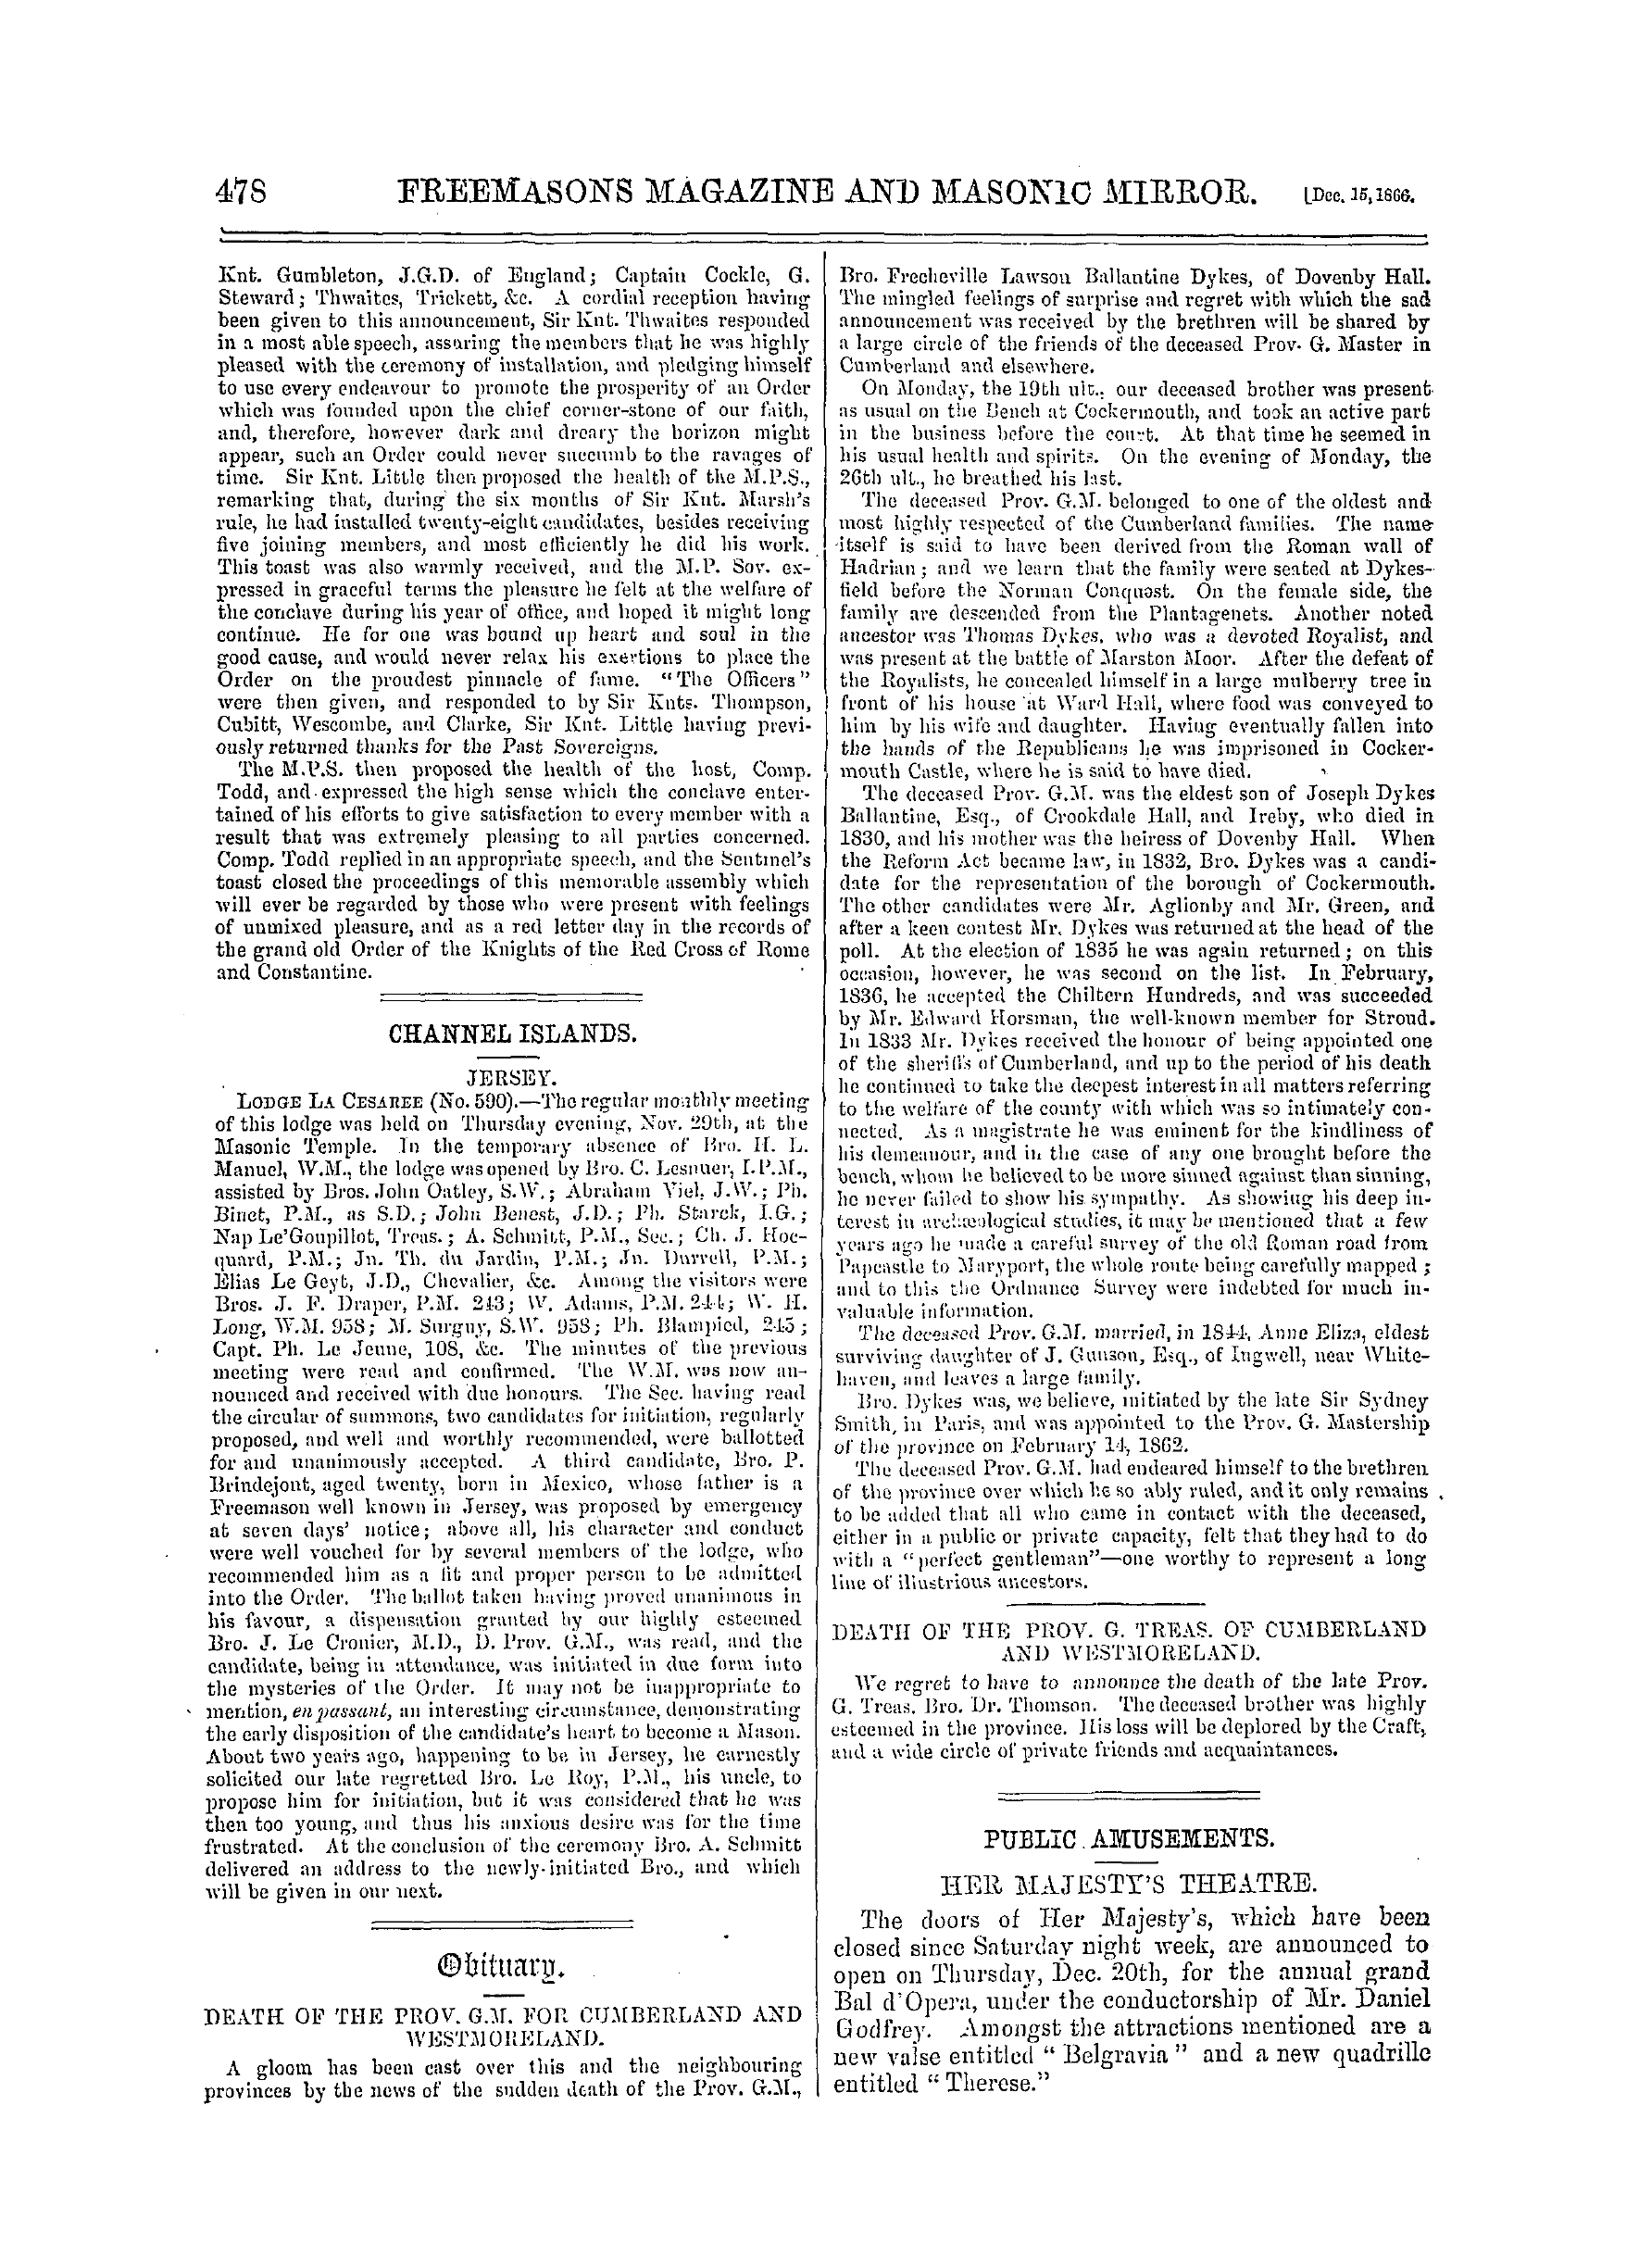 The Freemasons' Monthly Magazine: 1866-12-15: 18